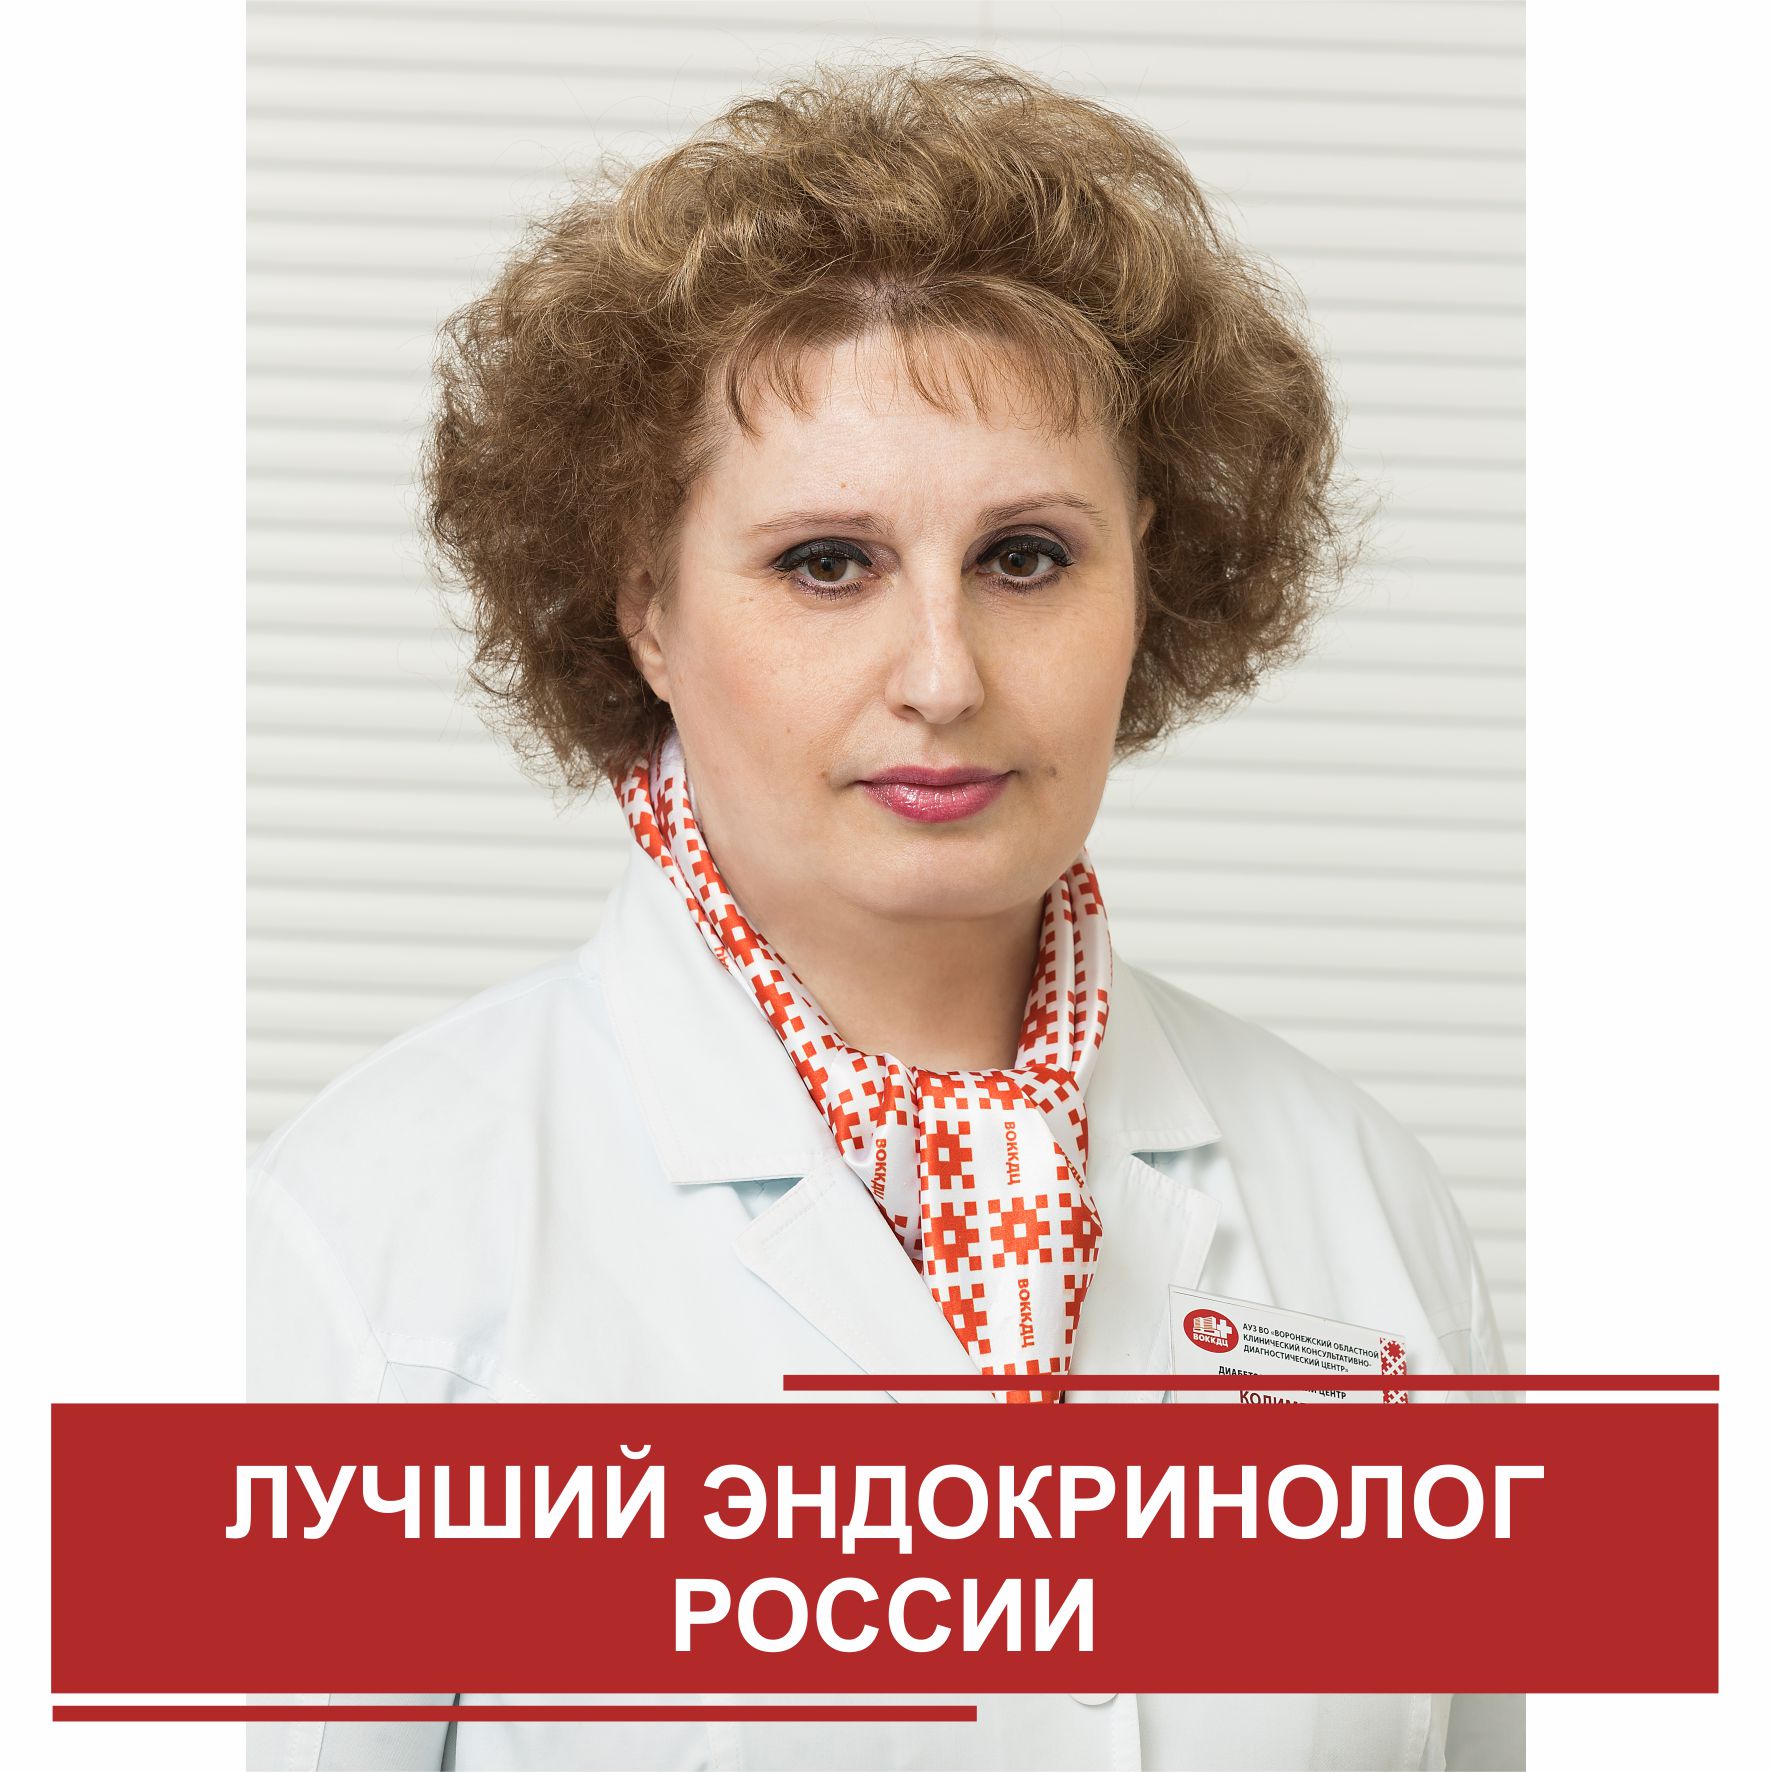 14 июня 2019 года определены победители Всероссийского конкурса врачей